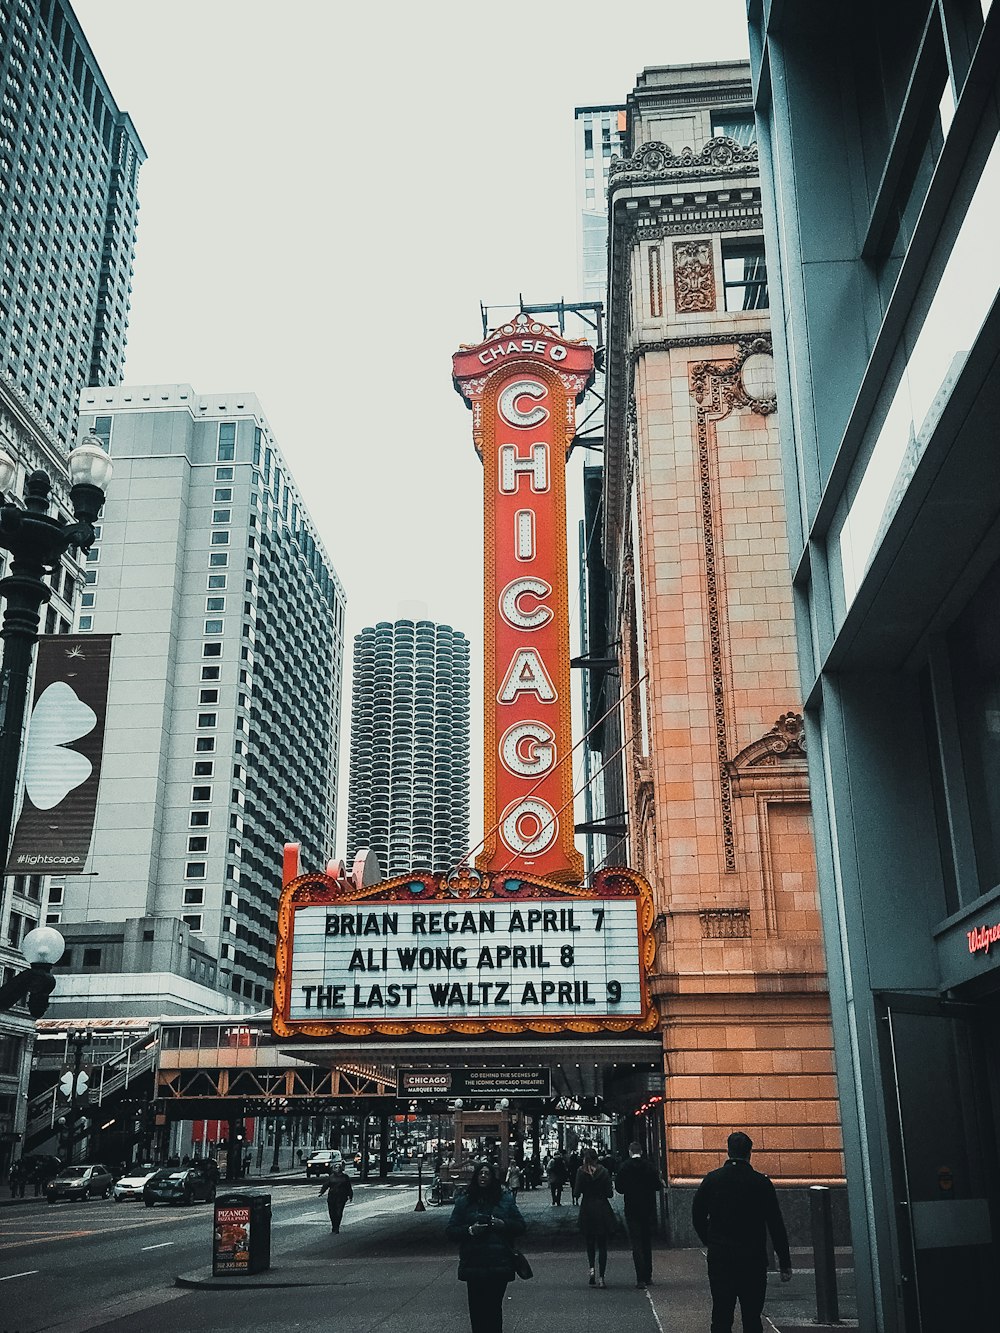 Théâtre de Chicago à l’affiche de Brain Regan le 7 avril